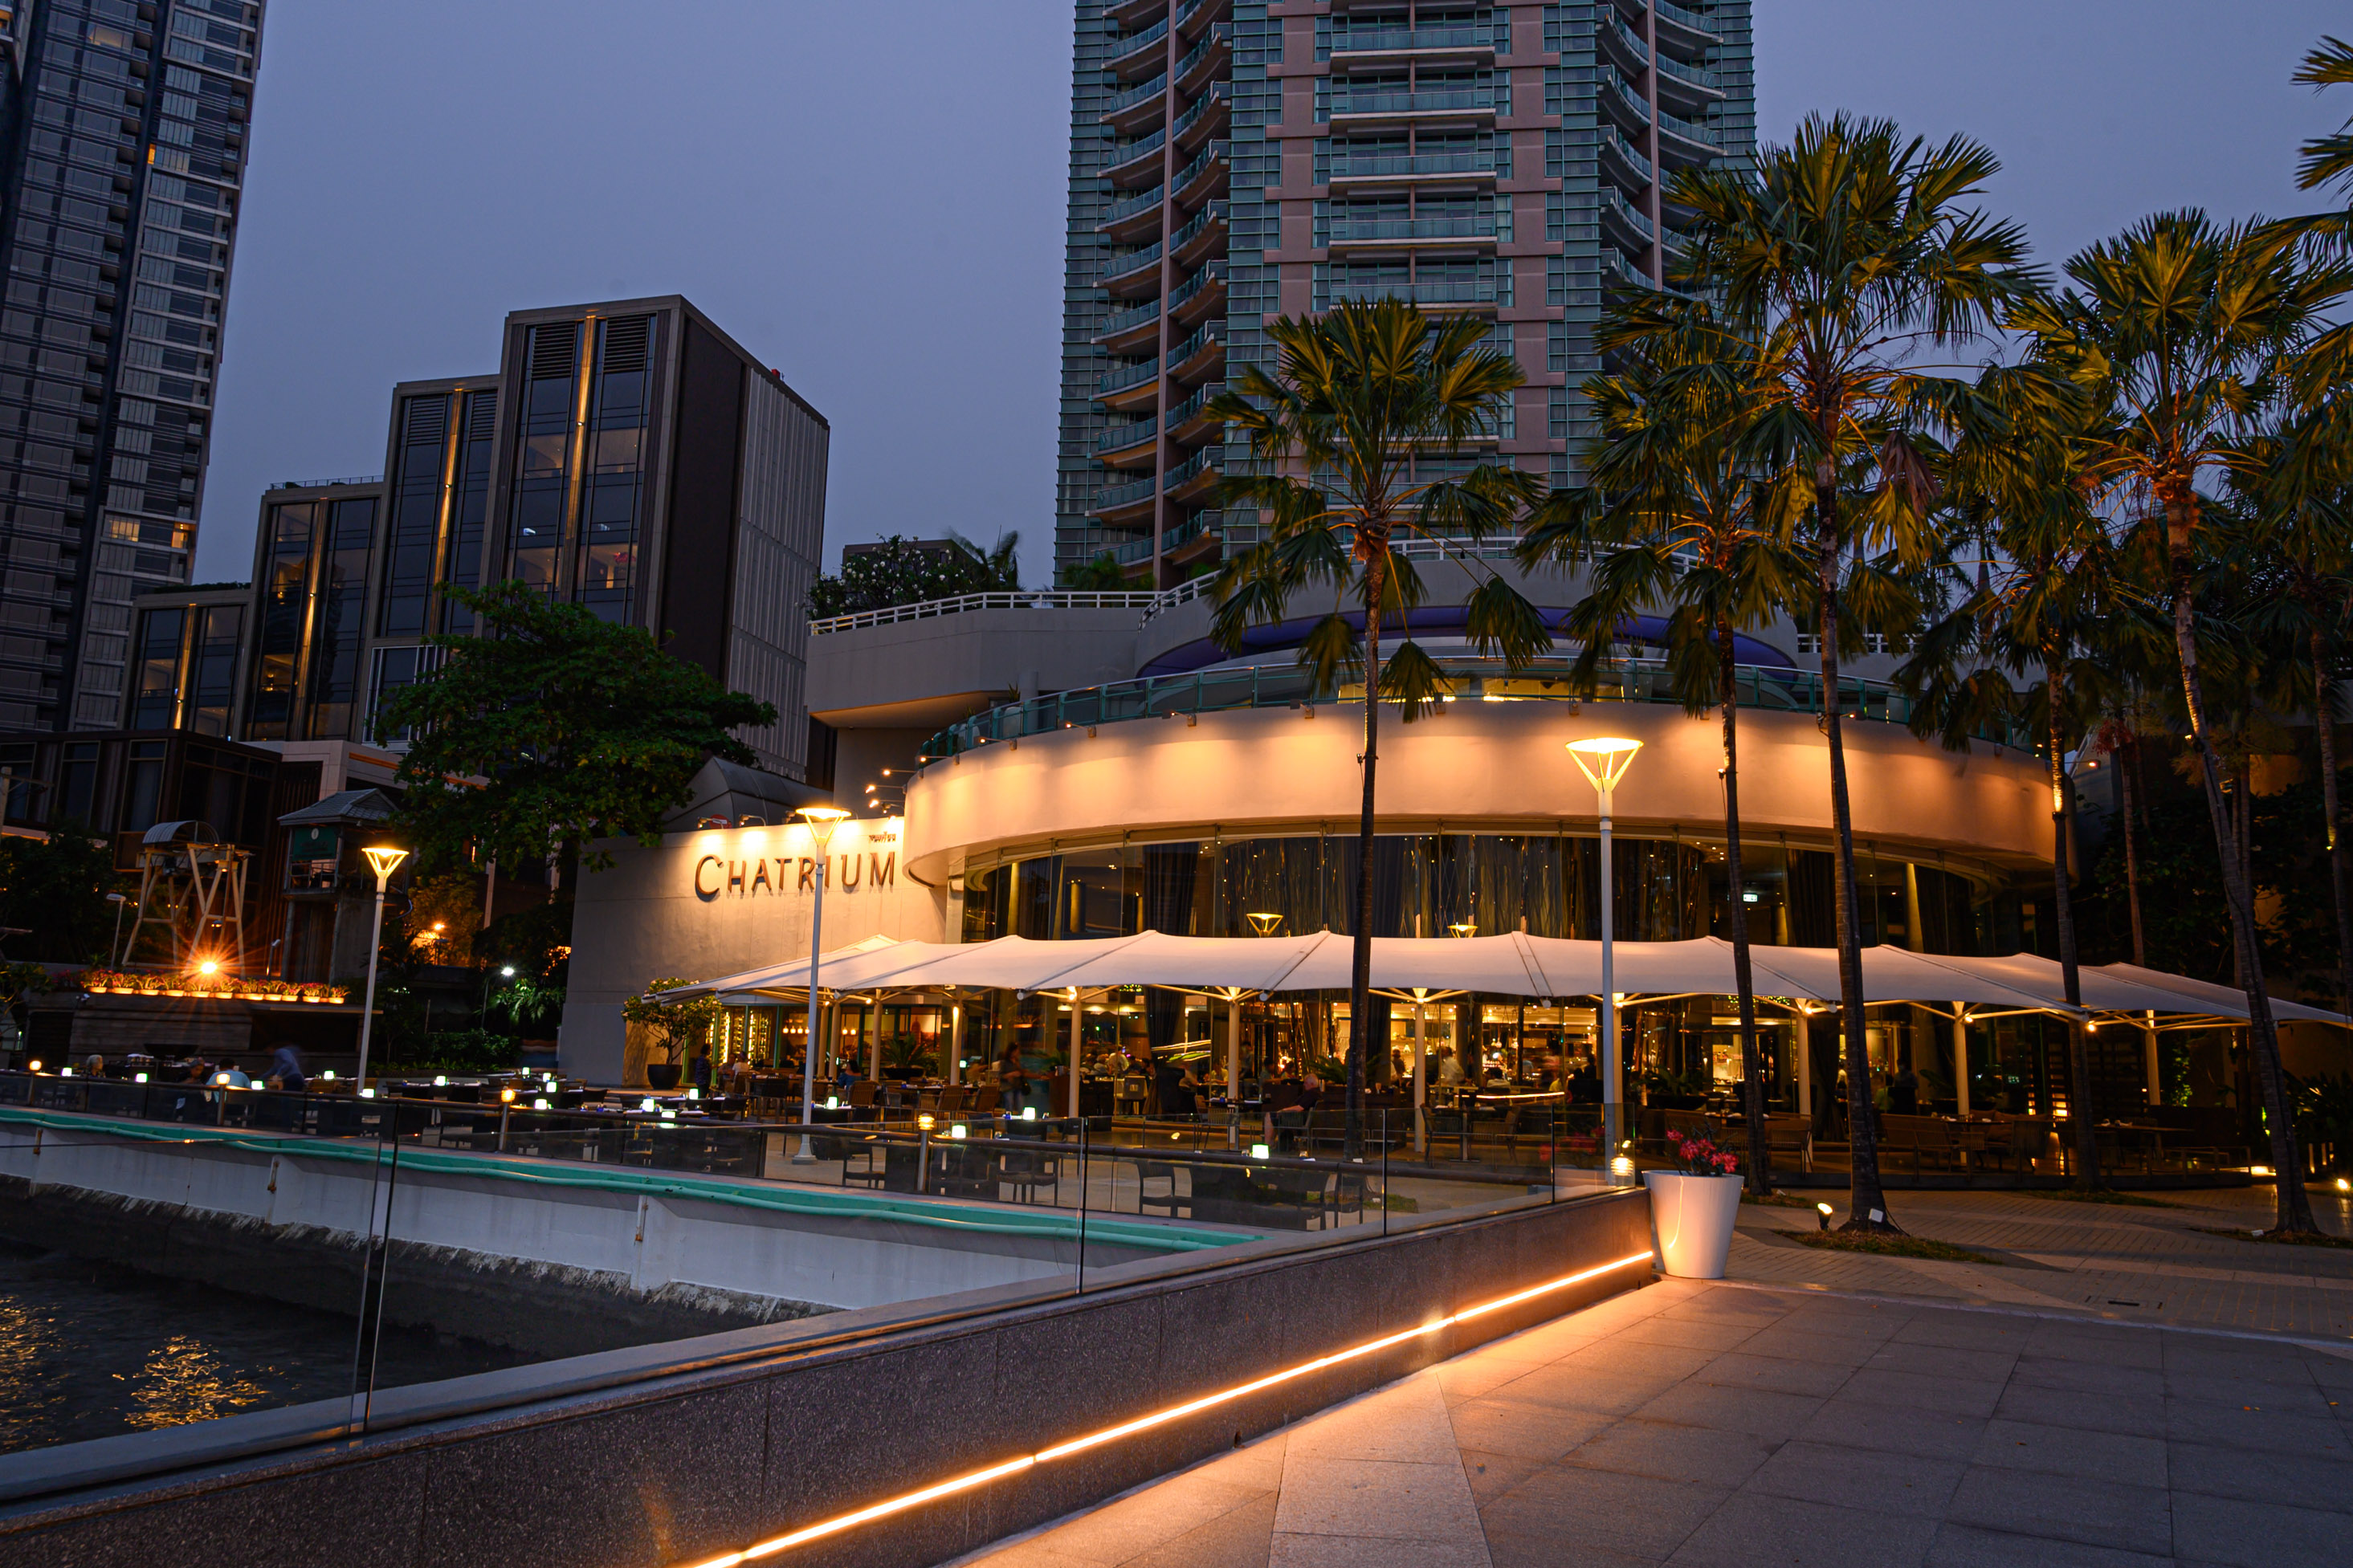 曼谷河畔察殿河濱酒店自助餐